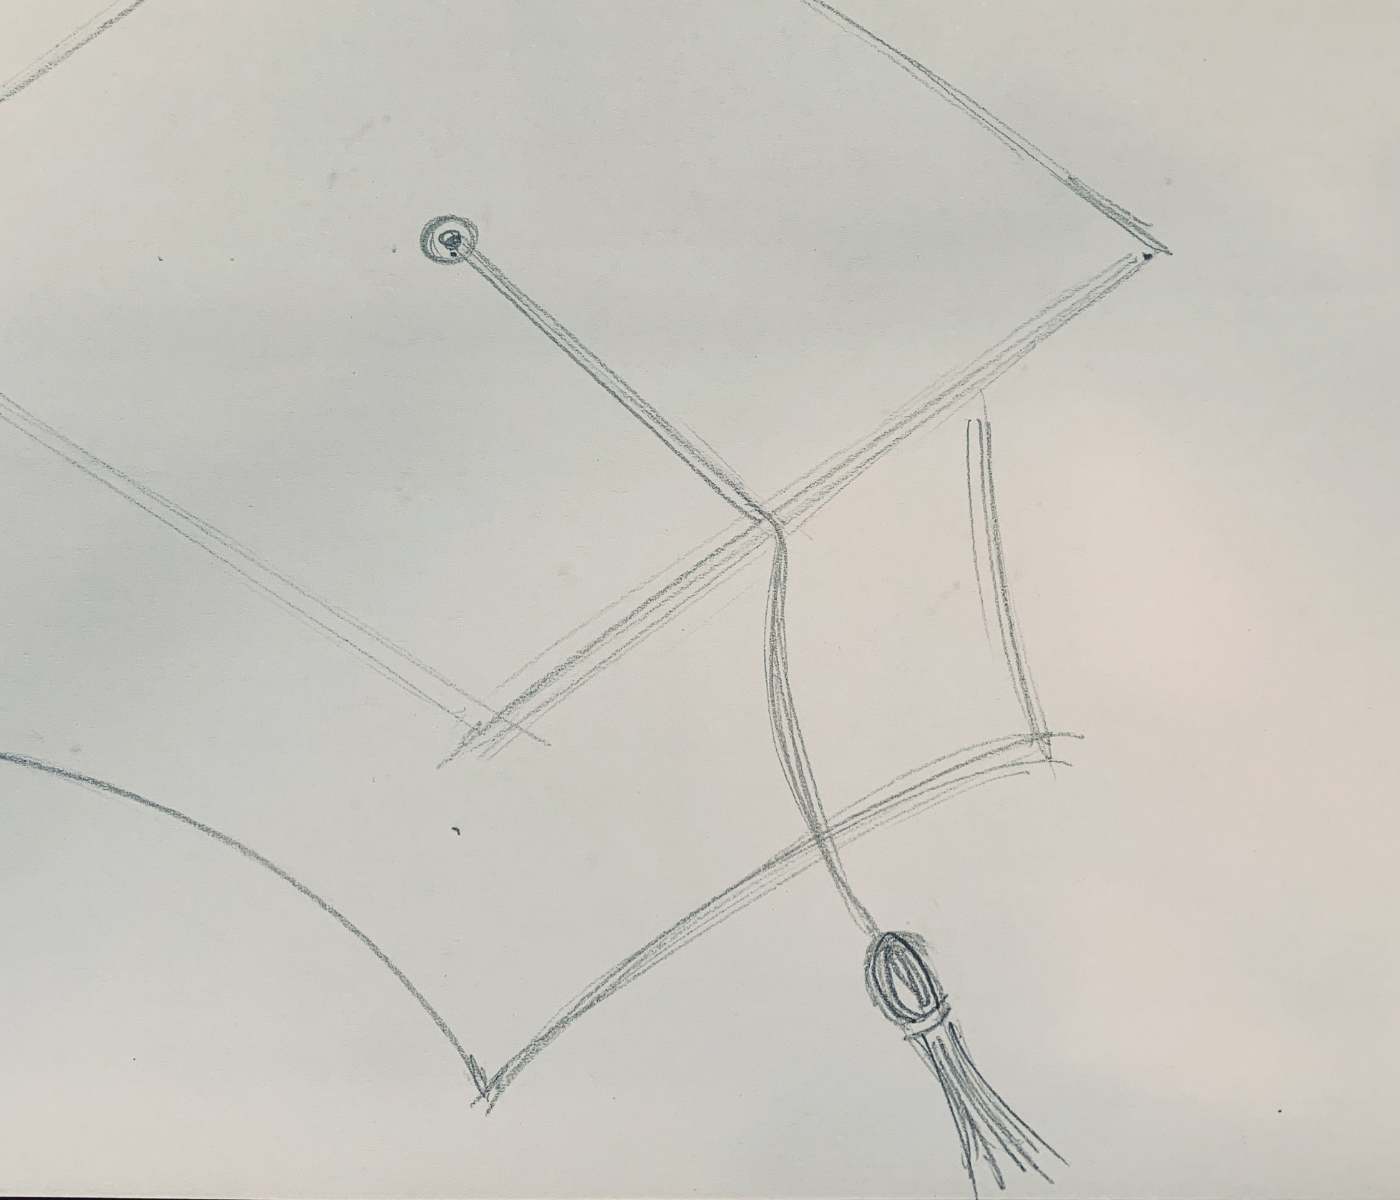 How to draw a graduation tassel